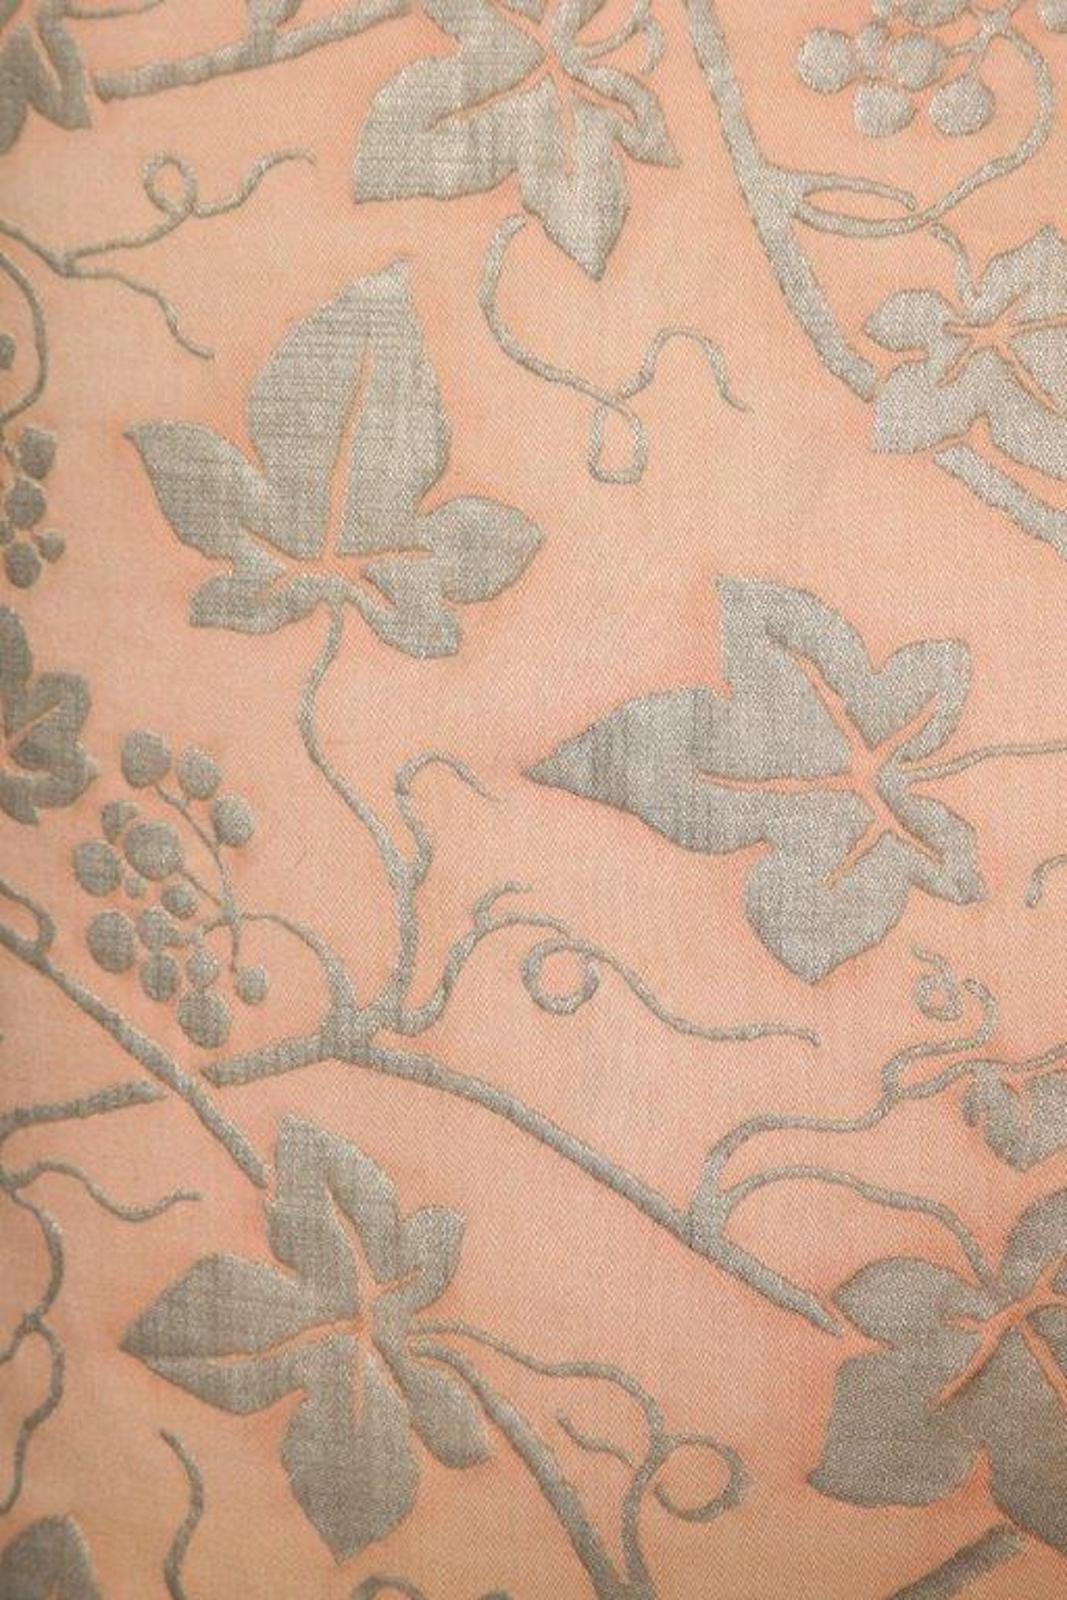 Une paire de coussins en tissu Fortuny dans le motif Edera, avec un motif rose pâle et argenté. Les jolis coussins présentent une bordure en lin et une bande de lin argentée à l'arrière. Le motif Fortuny est un dessin espagnol du 19e siècle qui